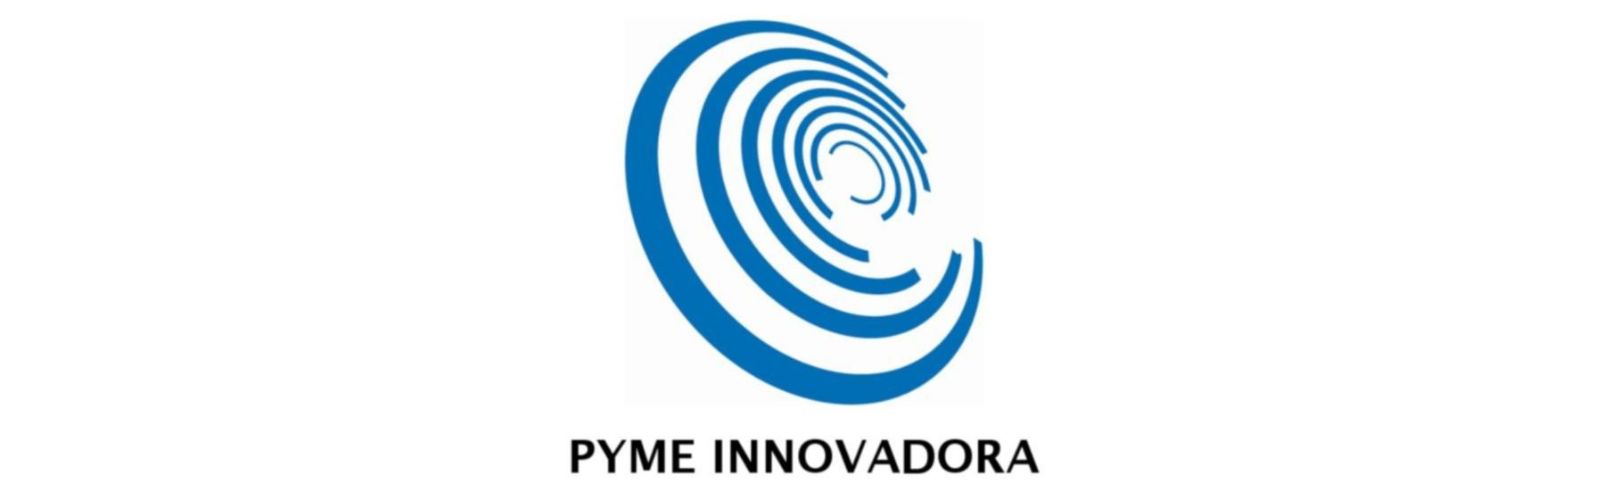 La spin-off “EmbryoCloud” logra el sello de Pyme Innovadora